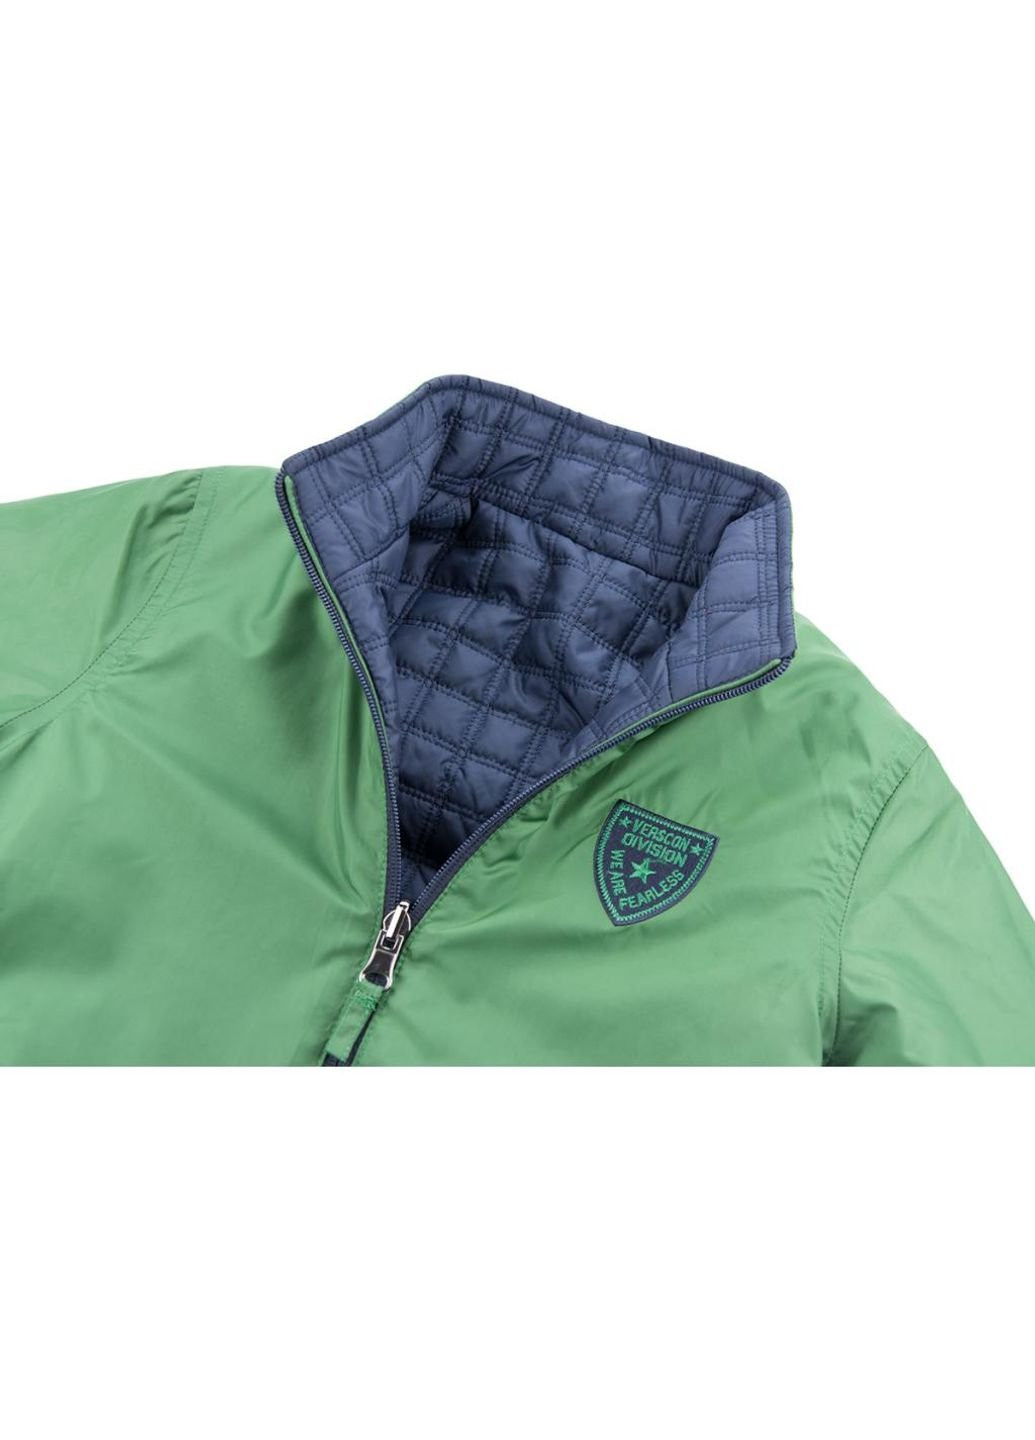 Синяя демисезонная куртка двухсторонняя синяя и зеленая (3278-128b-blue-green) Verscon